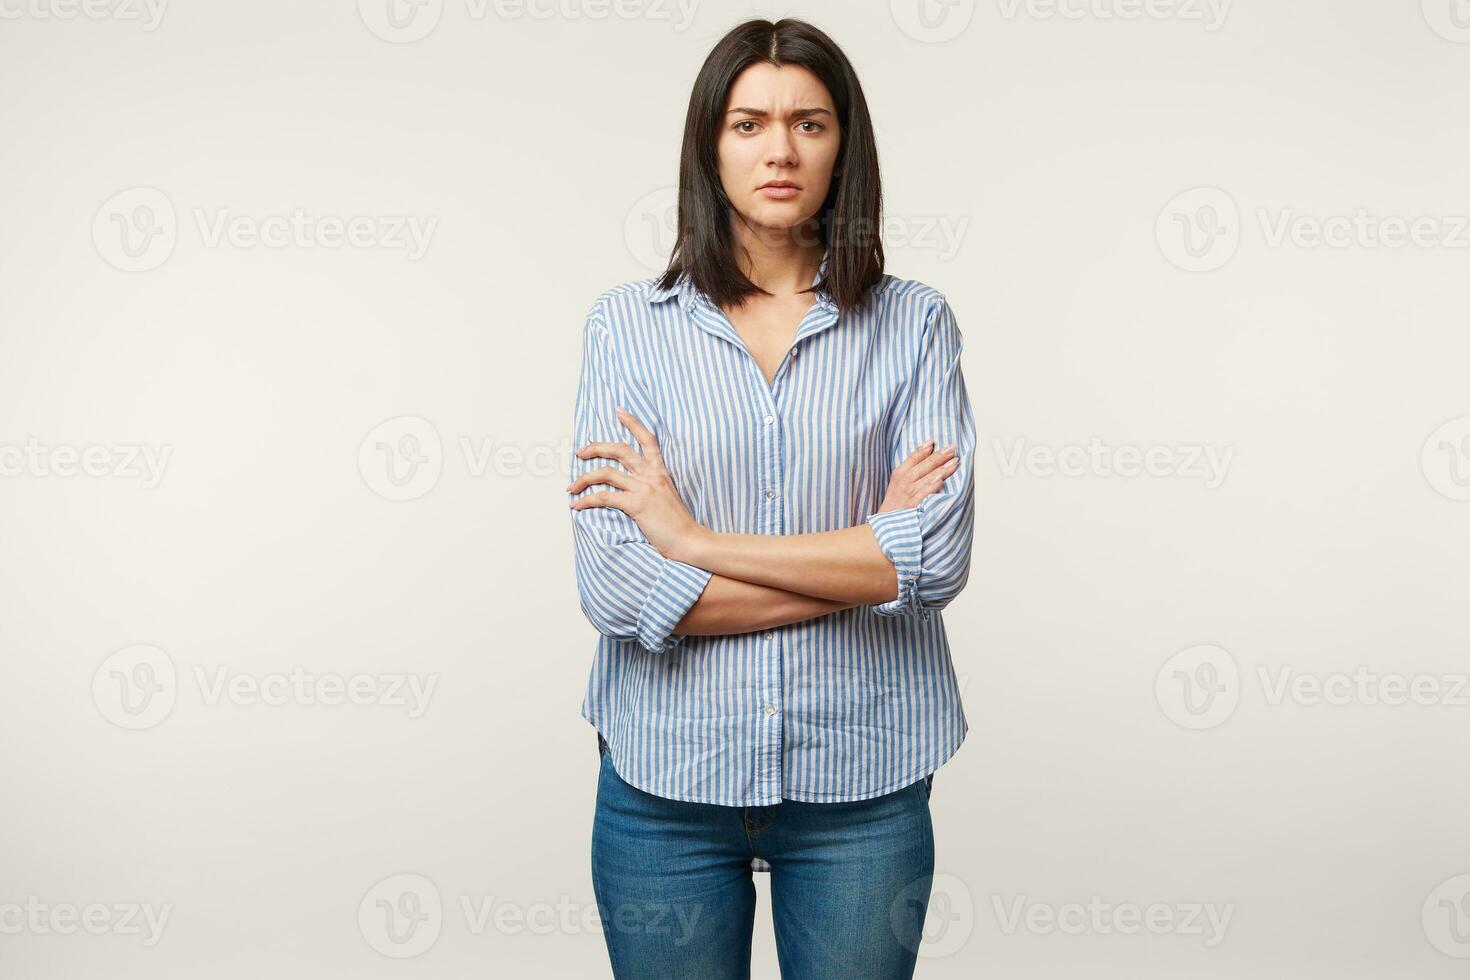 inomhus- Foto av brunett kvinna, utseende med misstro försiktig misstanke, spänd, lyssnar till någon med tvivel, stressig, stående med vapen vikta klädd i jeans och randig skjorta, över vit vägg